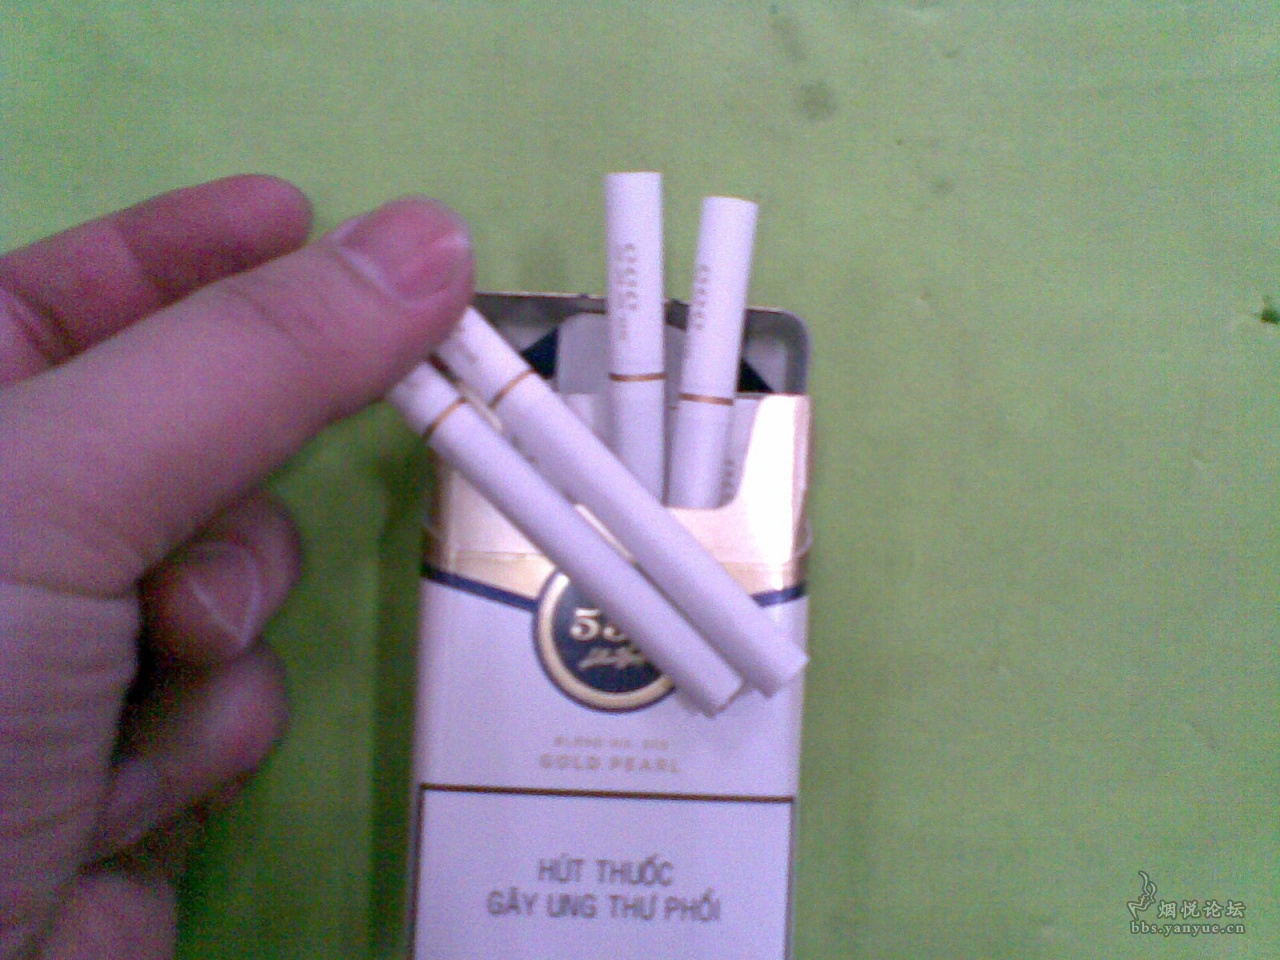 稀奇古怪的越南烟😄 - 香烟漫谈 - 烟悦网论坛